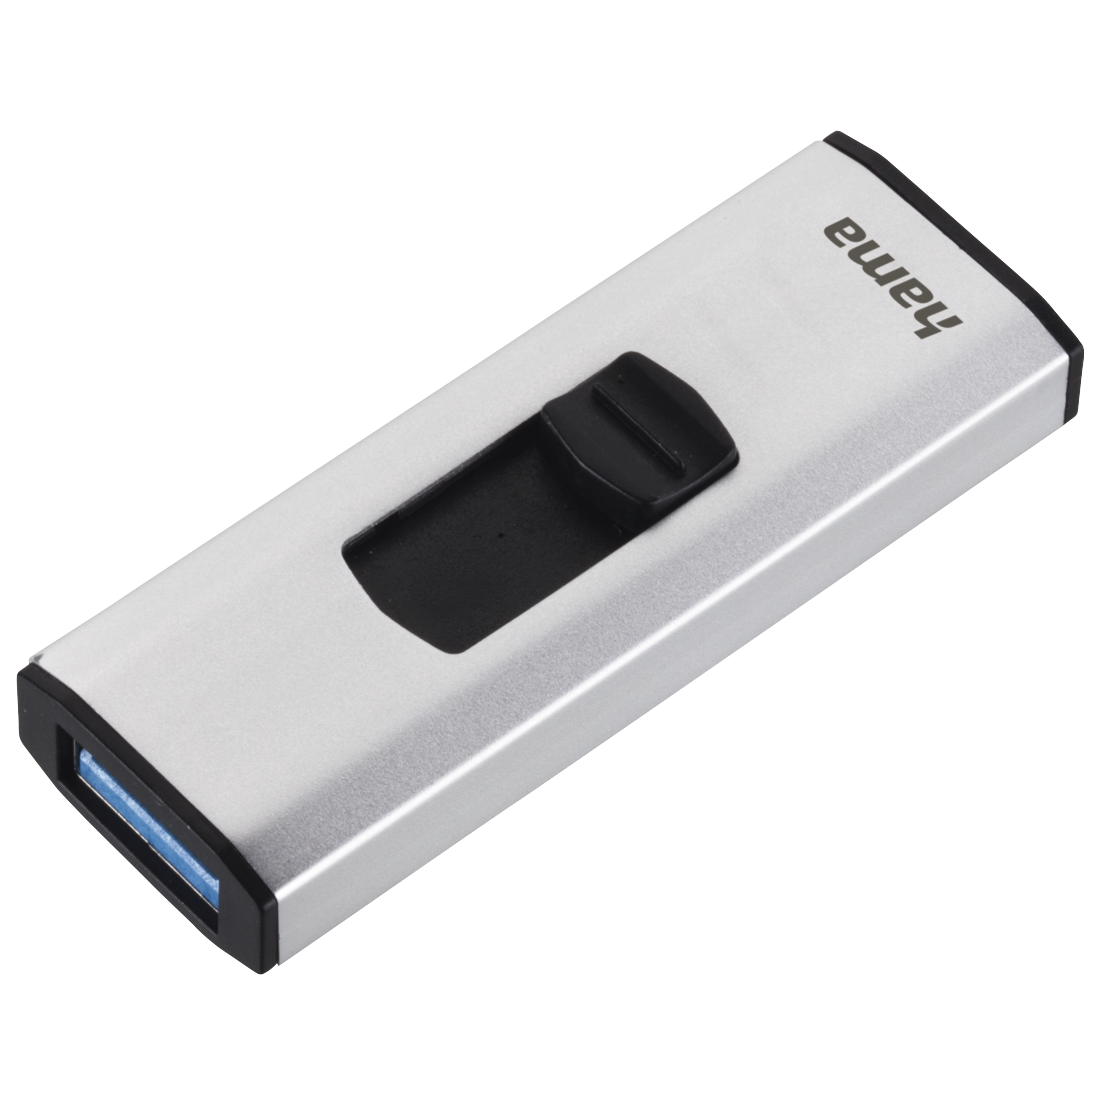 Hama USB-Stick "4Bizz", USB 3.0, 64 GB, 70MB/s, Silber/Schwarz